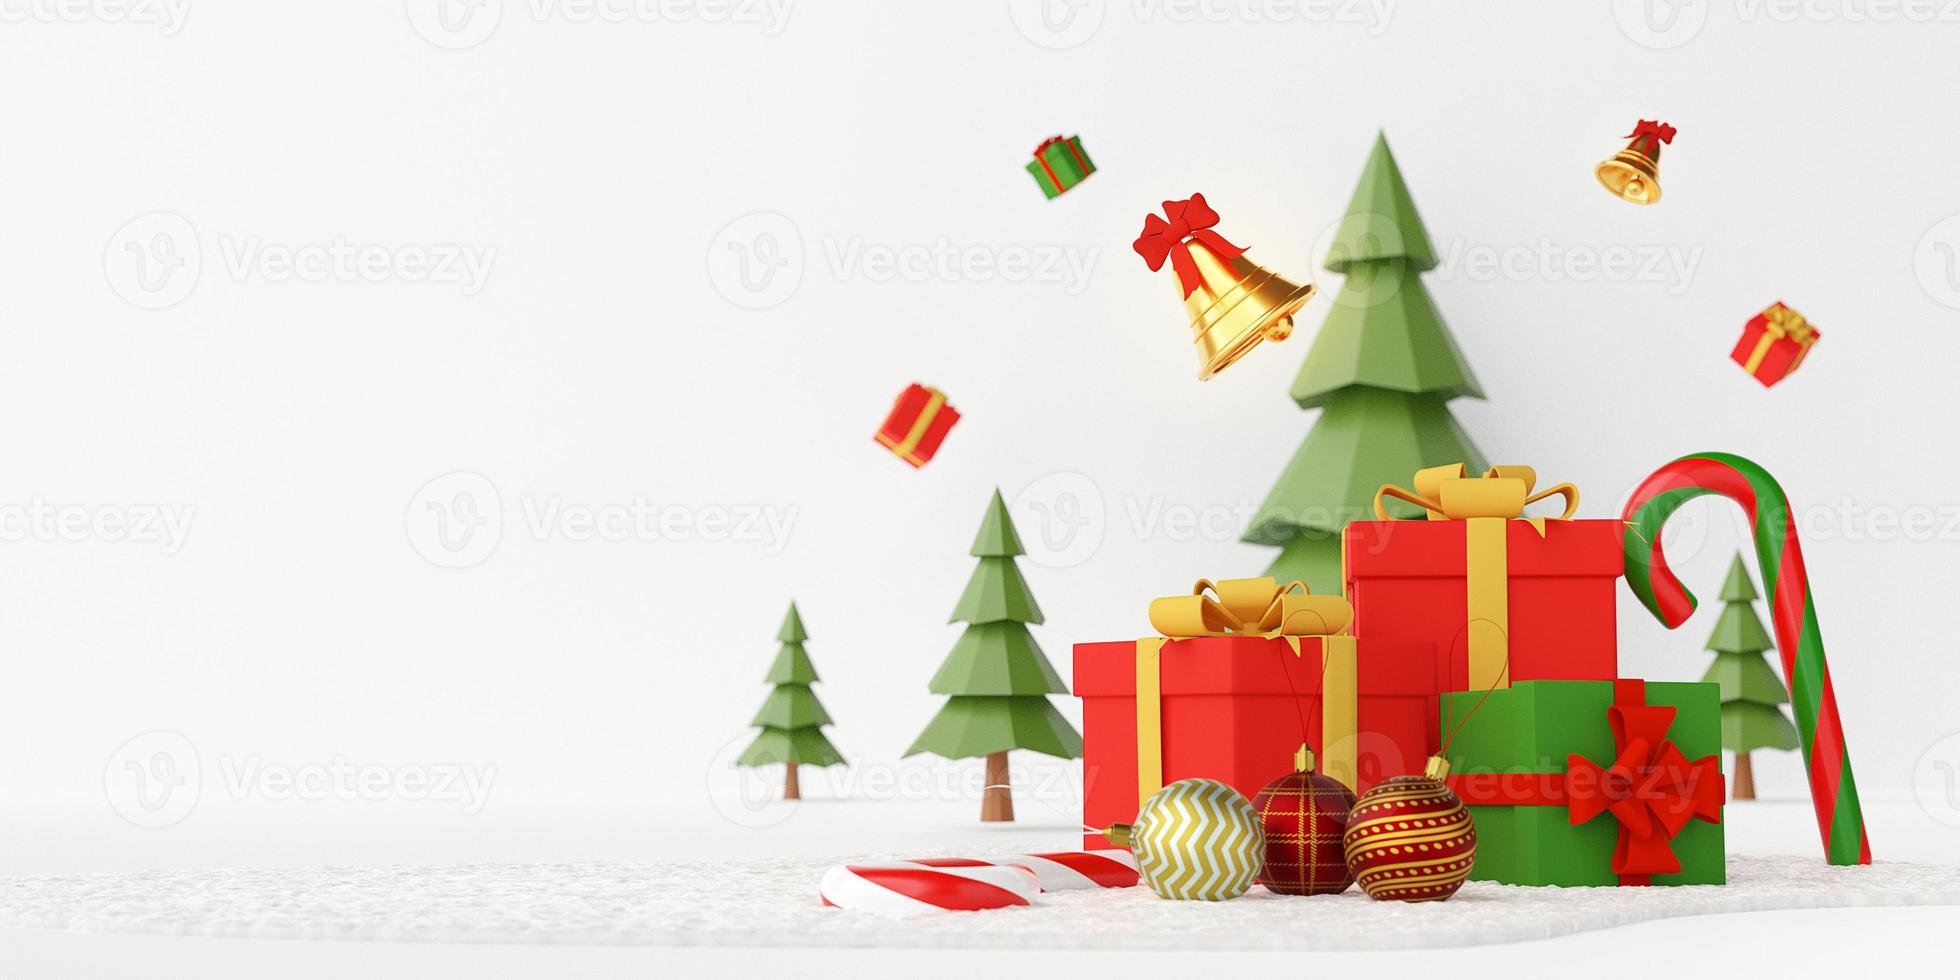 Kerstbanner, kerstcadeautjes en ornamenten op een sneeuwgrond met dennenboom erachter, witte achtergrond met kopieerruimte, 3D-rendering foto